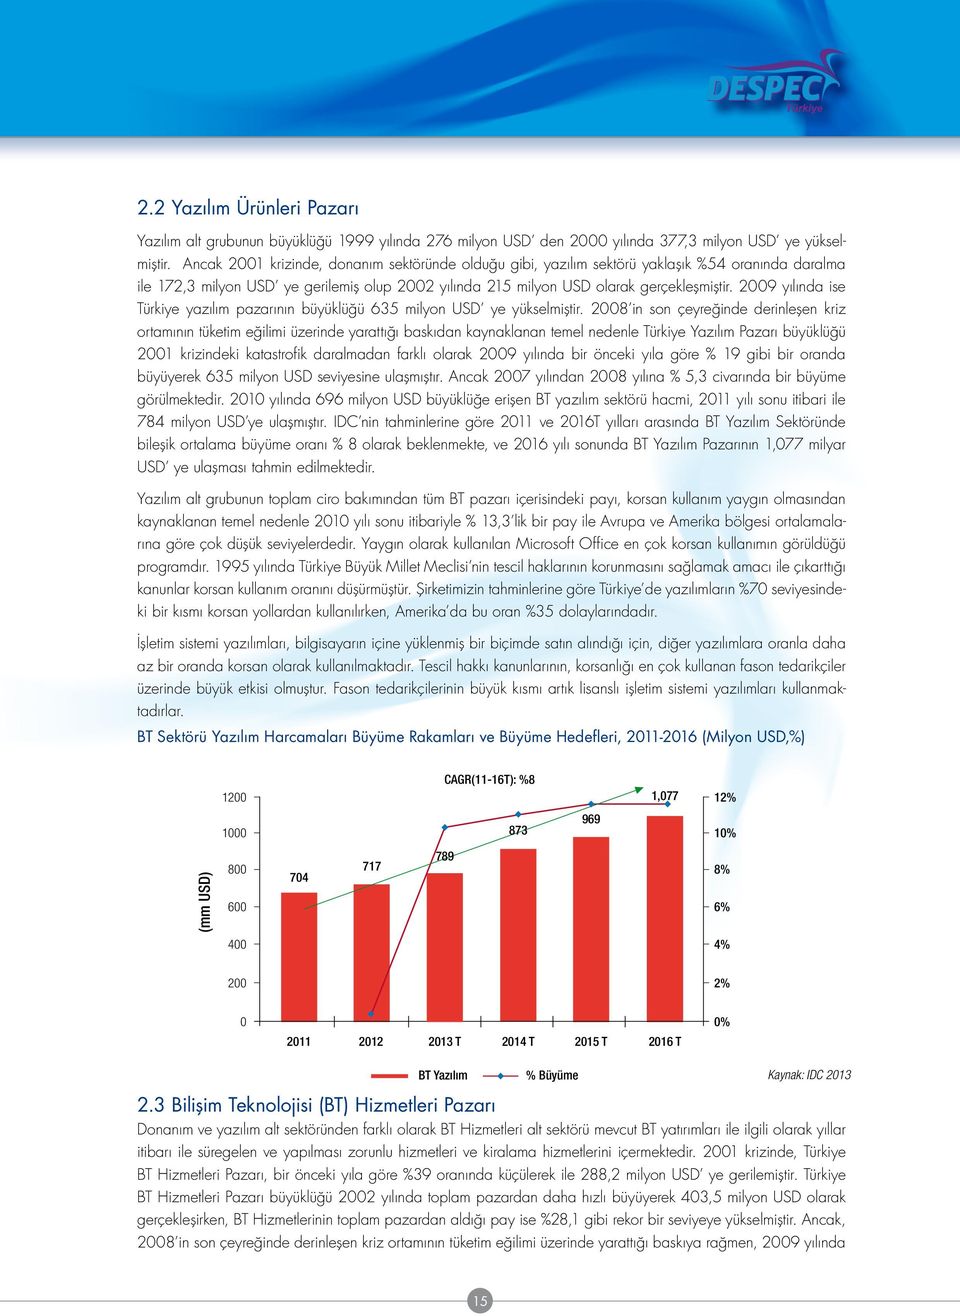 29 yılında ise Türkiye yazılım pazarının büyüklüğü 635 milyon USD ye yükselmiştir.